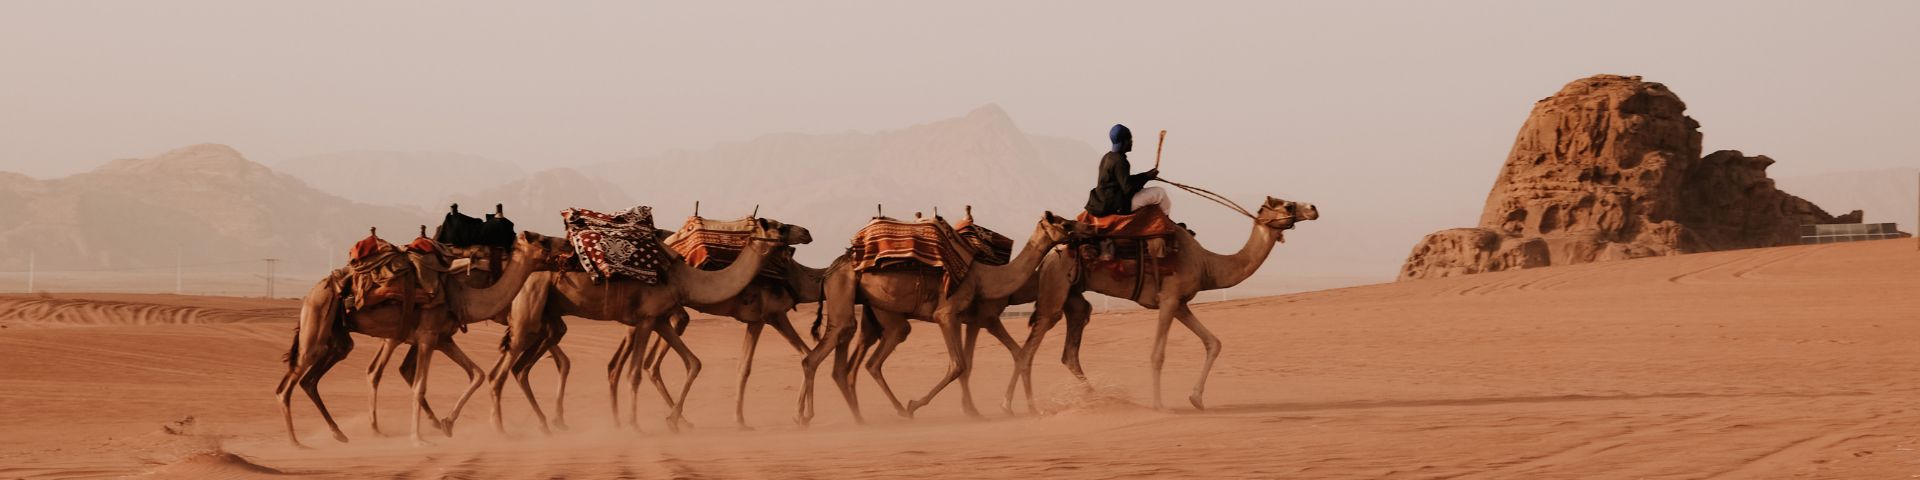 Jordanie in woestijn reis met FLY and BiKE